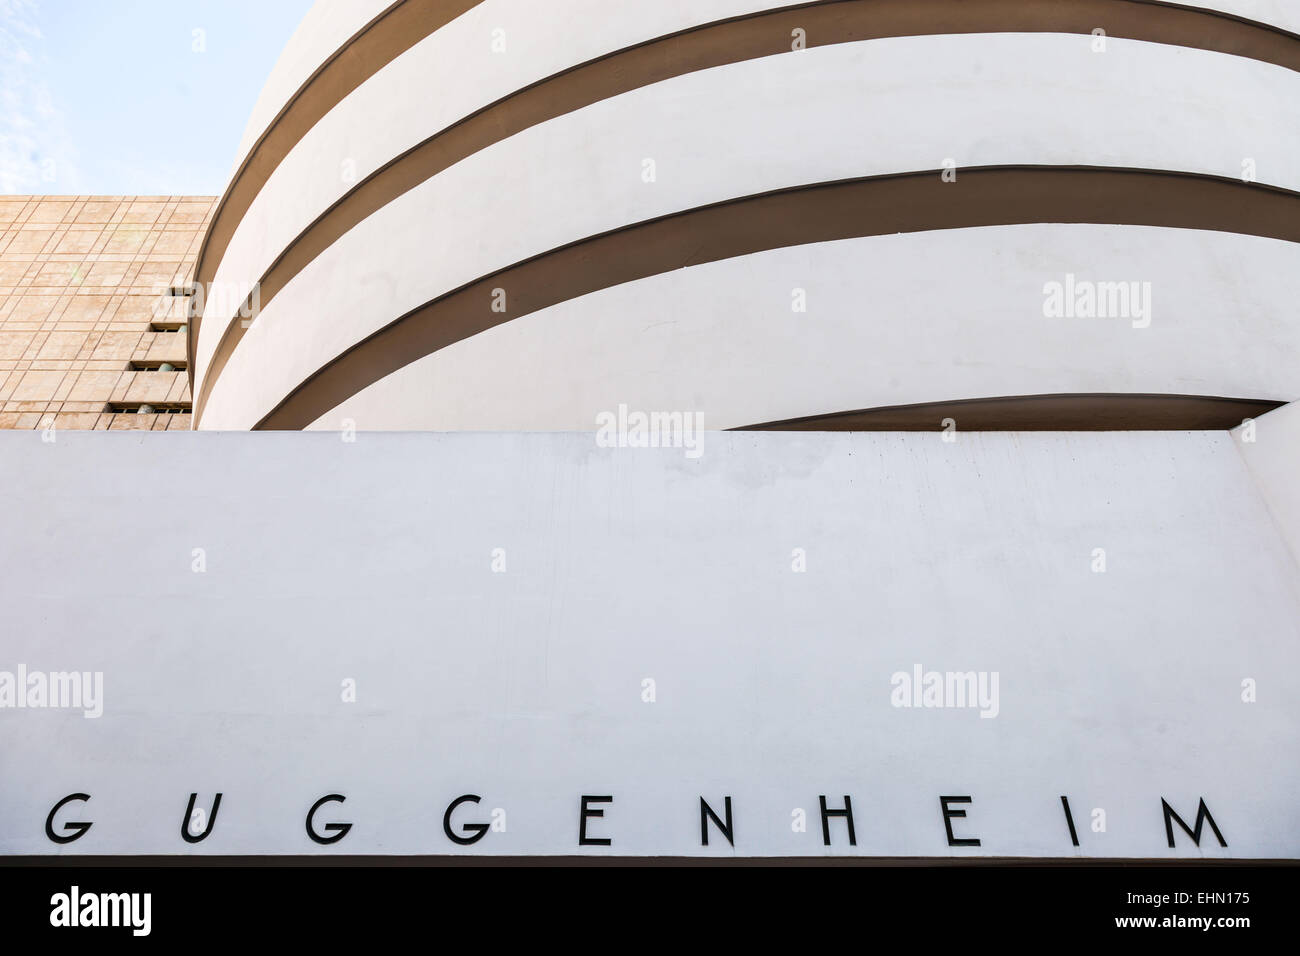 Solomon R. Guggenheim museum, New York City, USA. Stock Photo